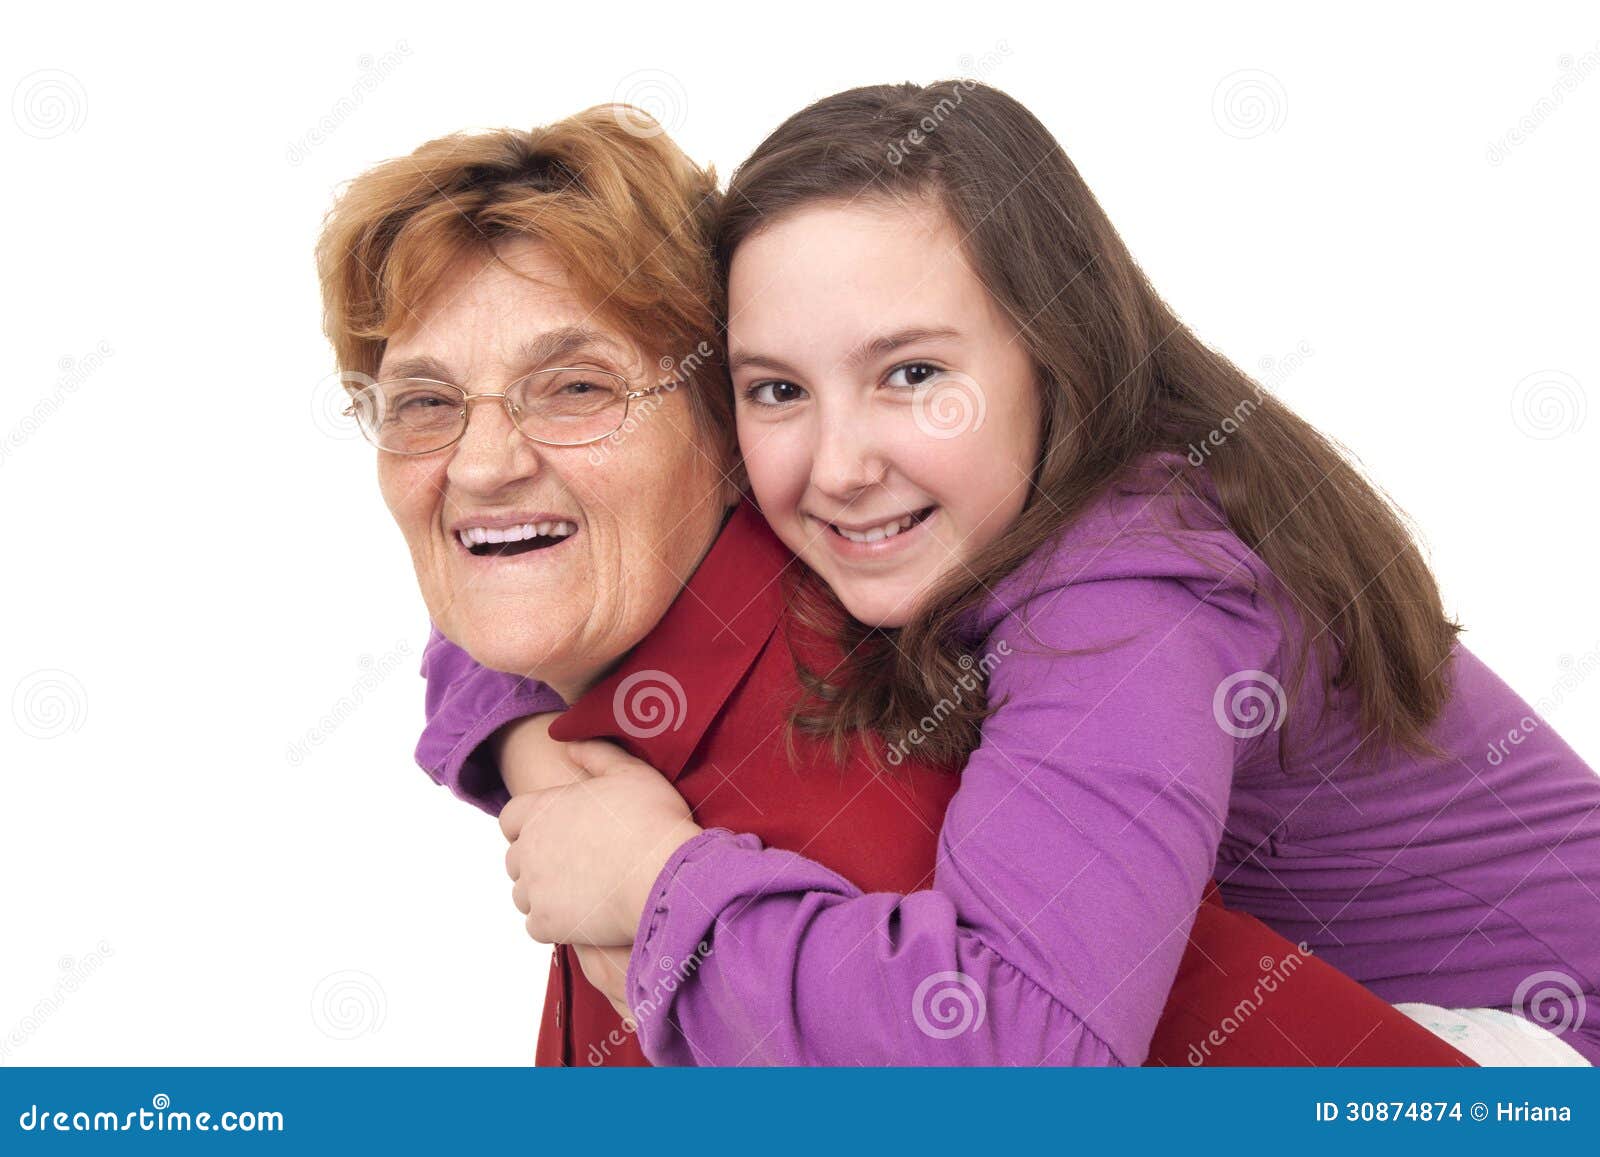 Обнимаю бабушку бабушку мою слушать. Объятия бабушки и внучки. Бабушка обнимает внучку. Объятия с бабушкой. Внучка обнимает бабушку.